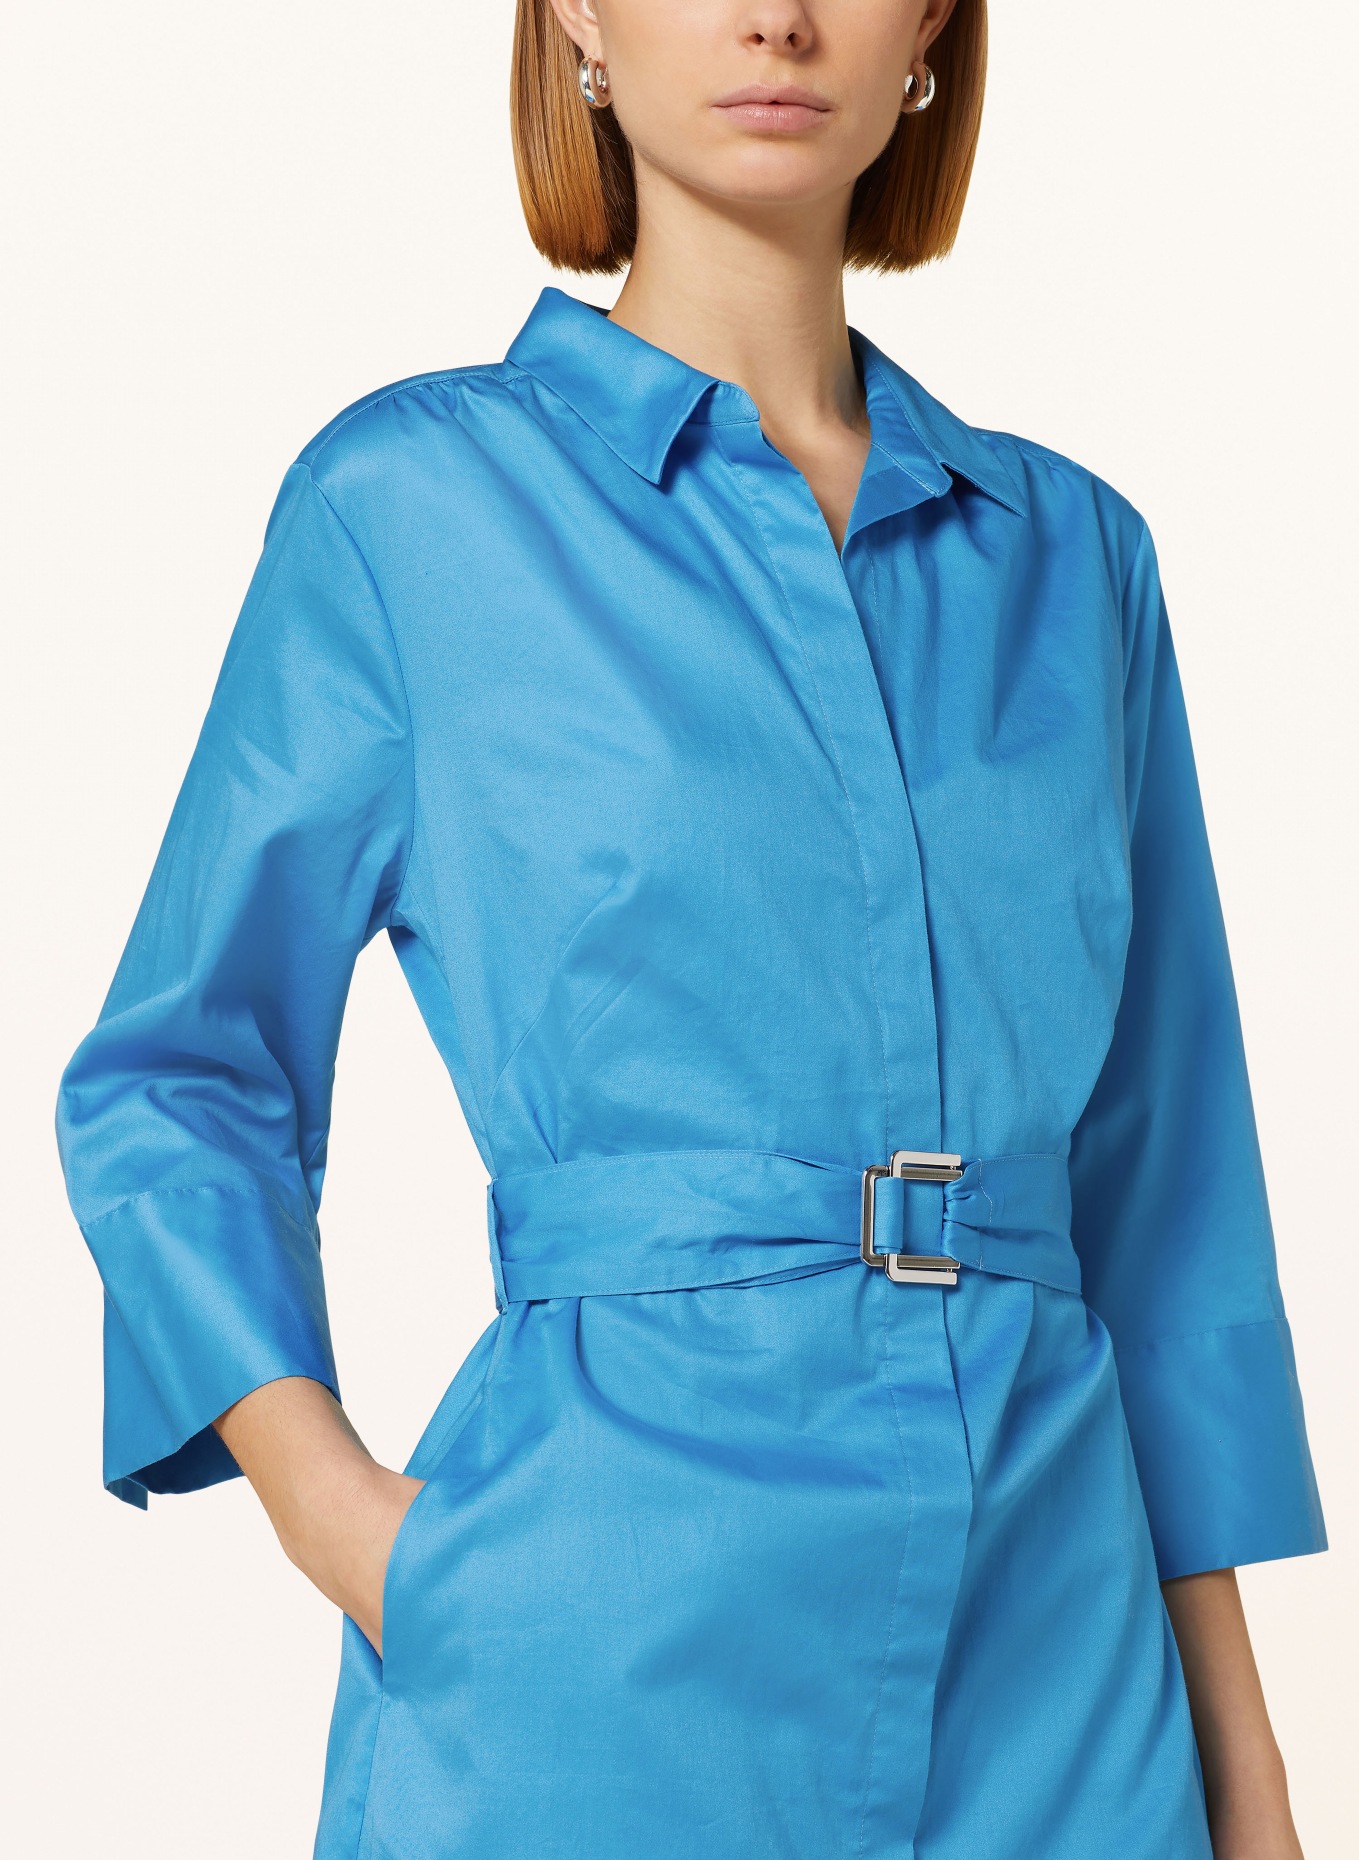 s.Oliver BLACK LABEL Shirt dress with 3/4 sleeves, Color: BLUE (Image 4)